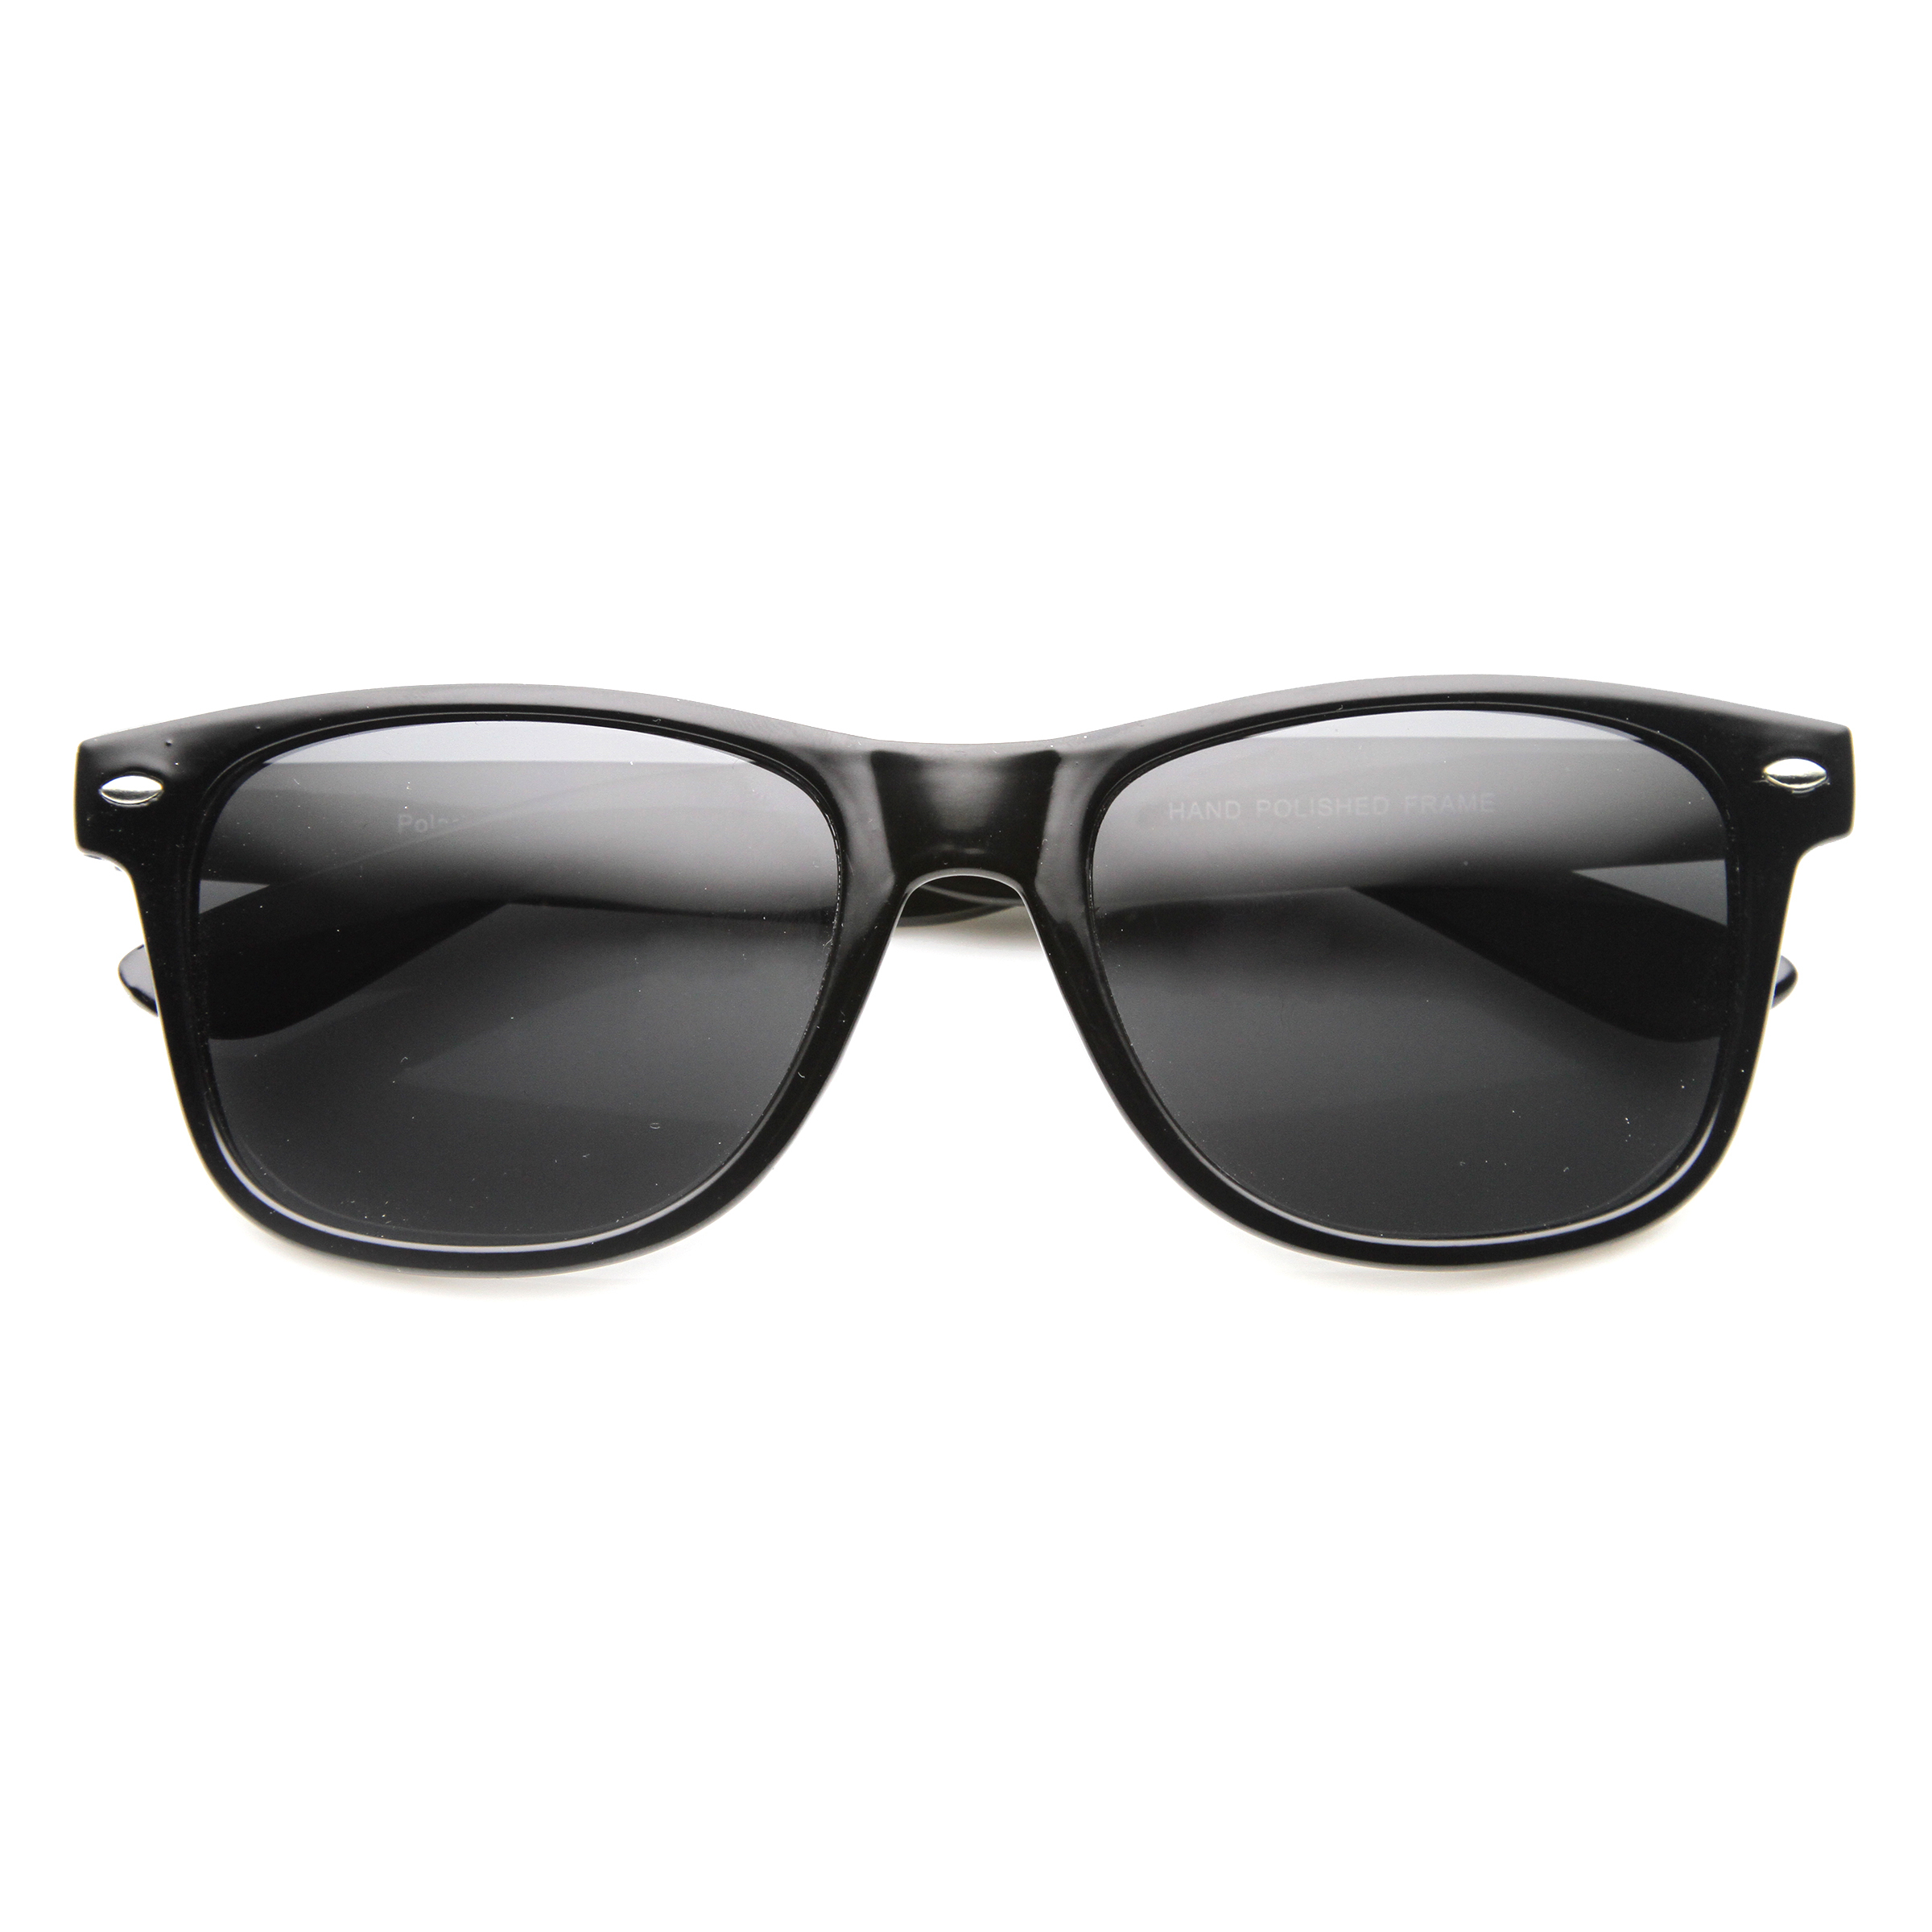 Classic 80s Retro Large Classic Horned Rim Style Sunglasses Eyewear - 8452 - Shiny Black / Smoke